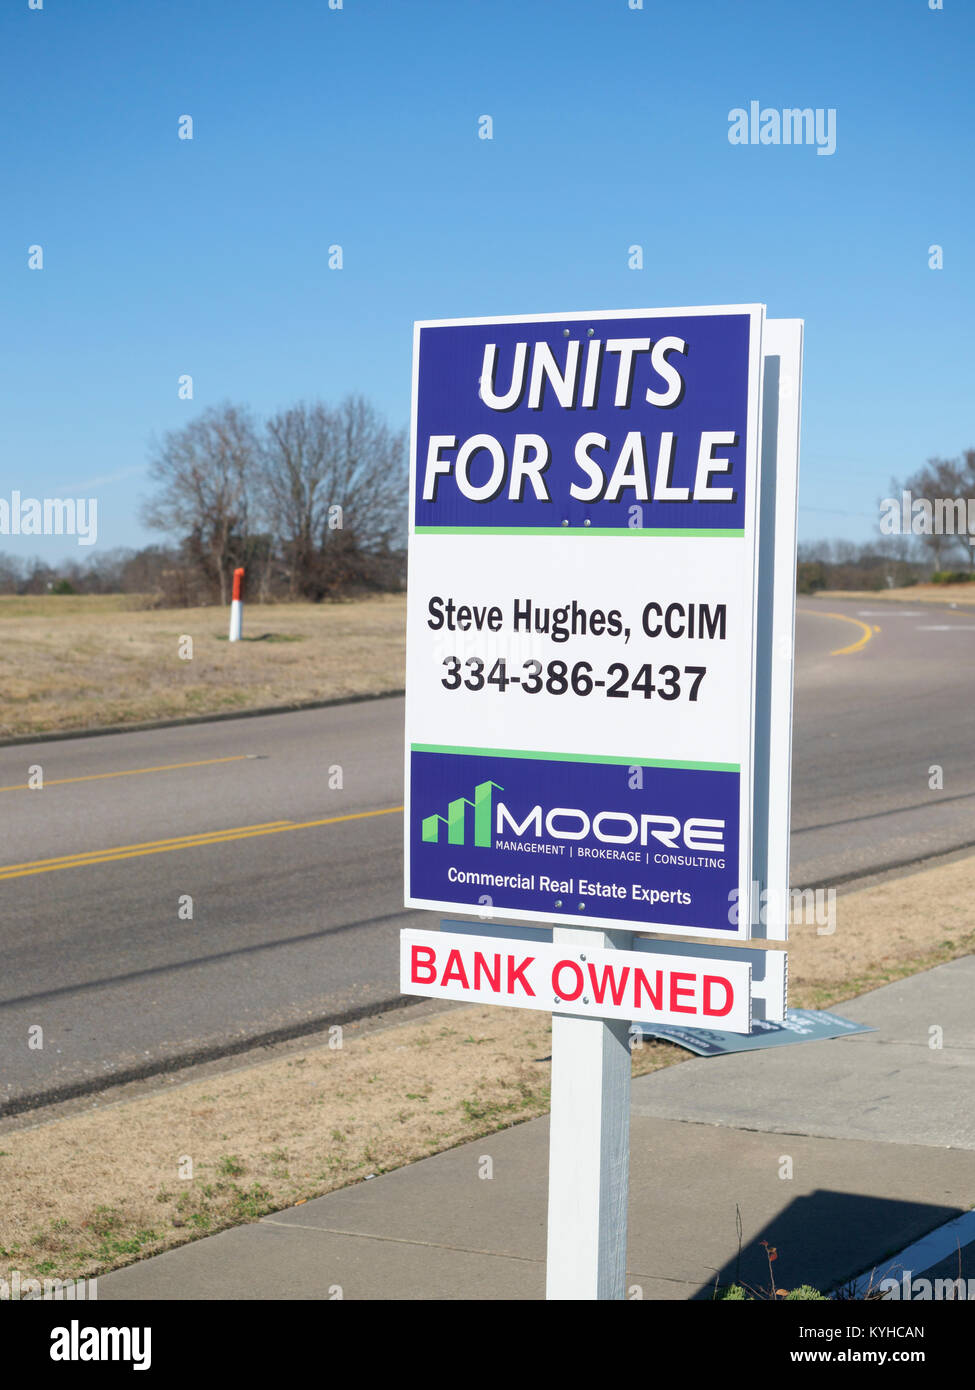 Biens immobiliers appartenant à la banque street sign montrant pour la vente, unit indiquant la propriété de forclusion à Montgomery, Alabama, United States. Banque D'Images